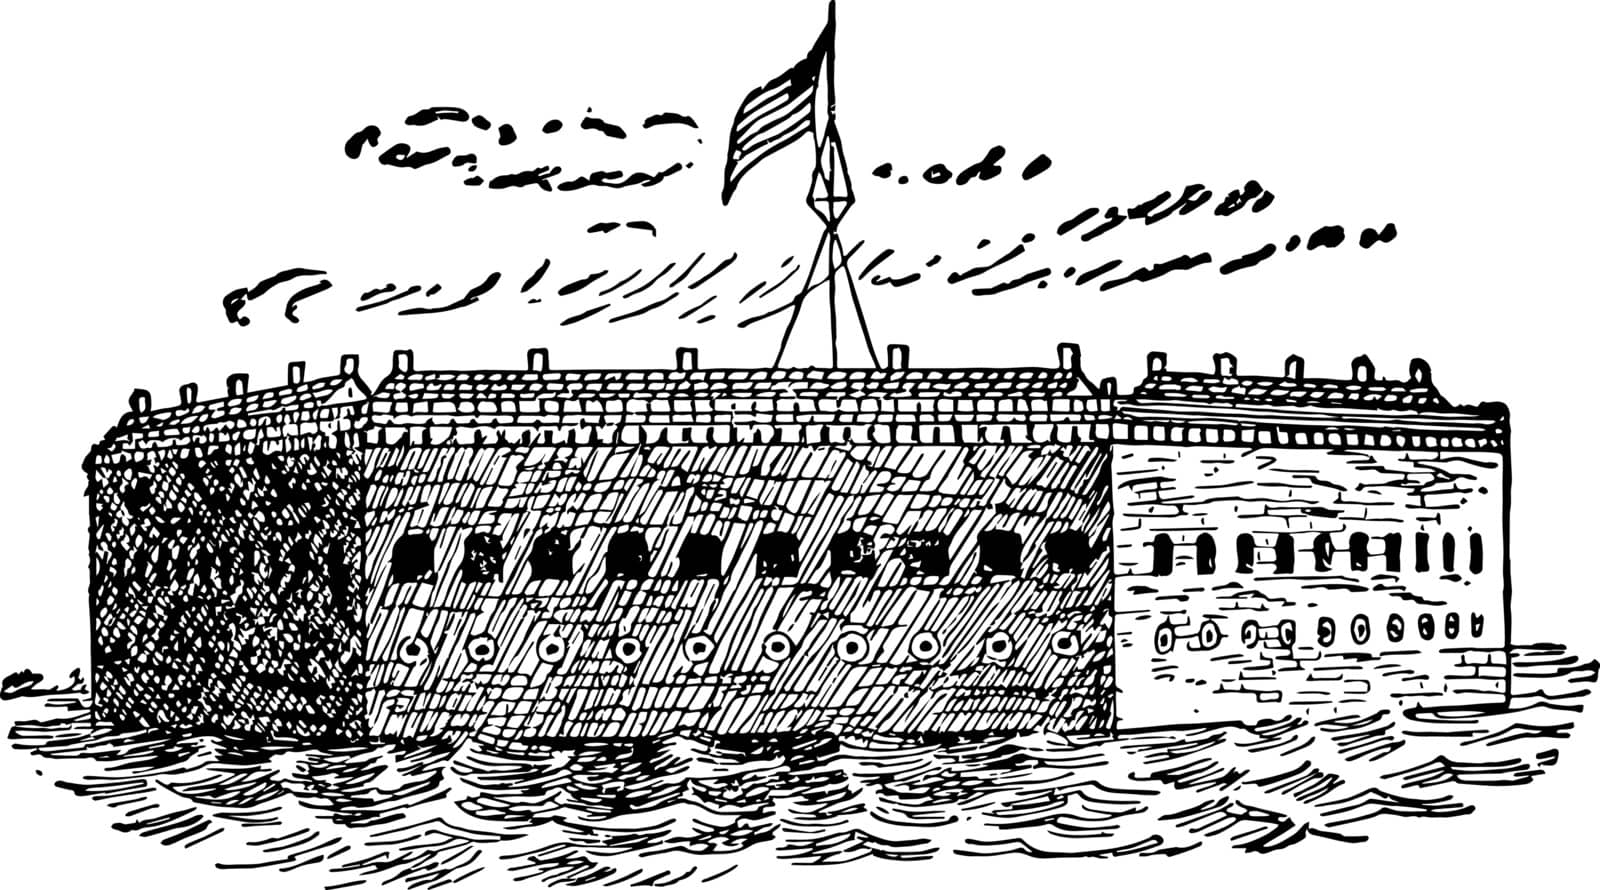 Fort Sumter vintage illustration by Morphart